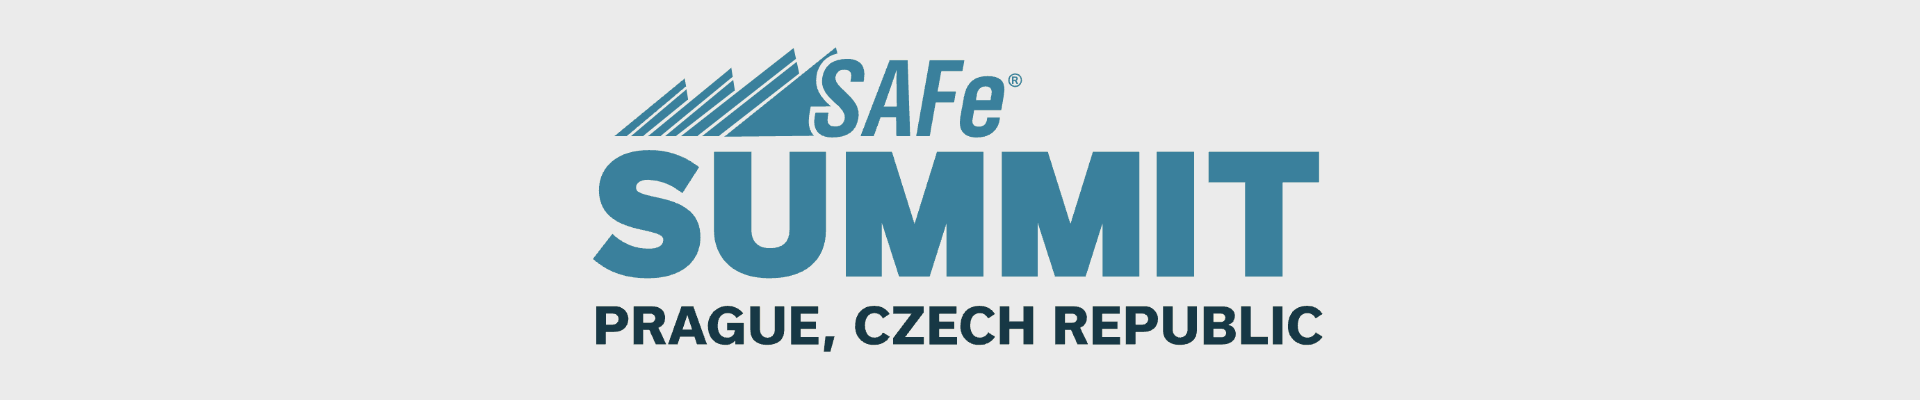 ONEPOINT's Team at SAFe Summit in Prague